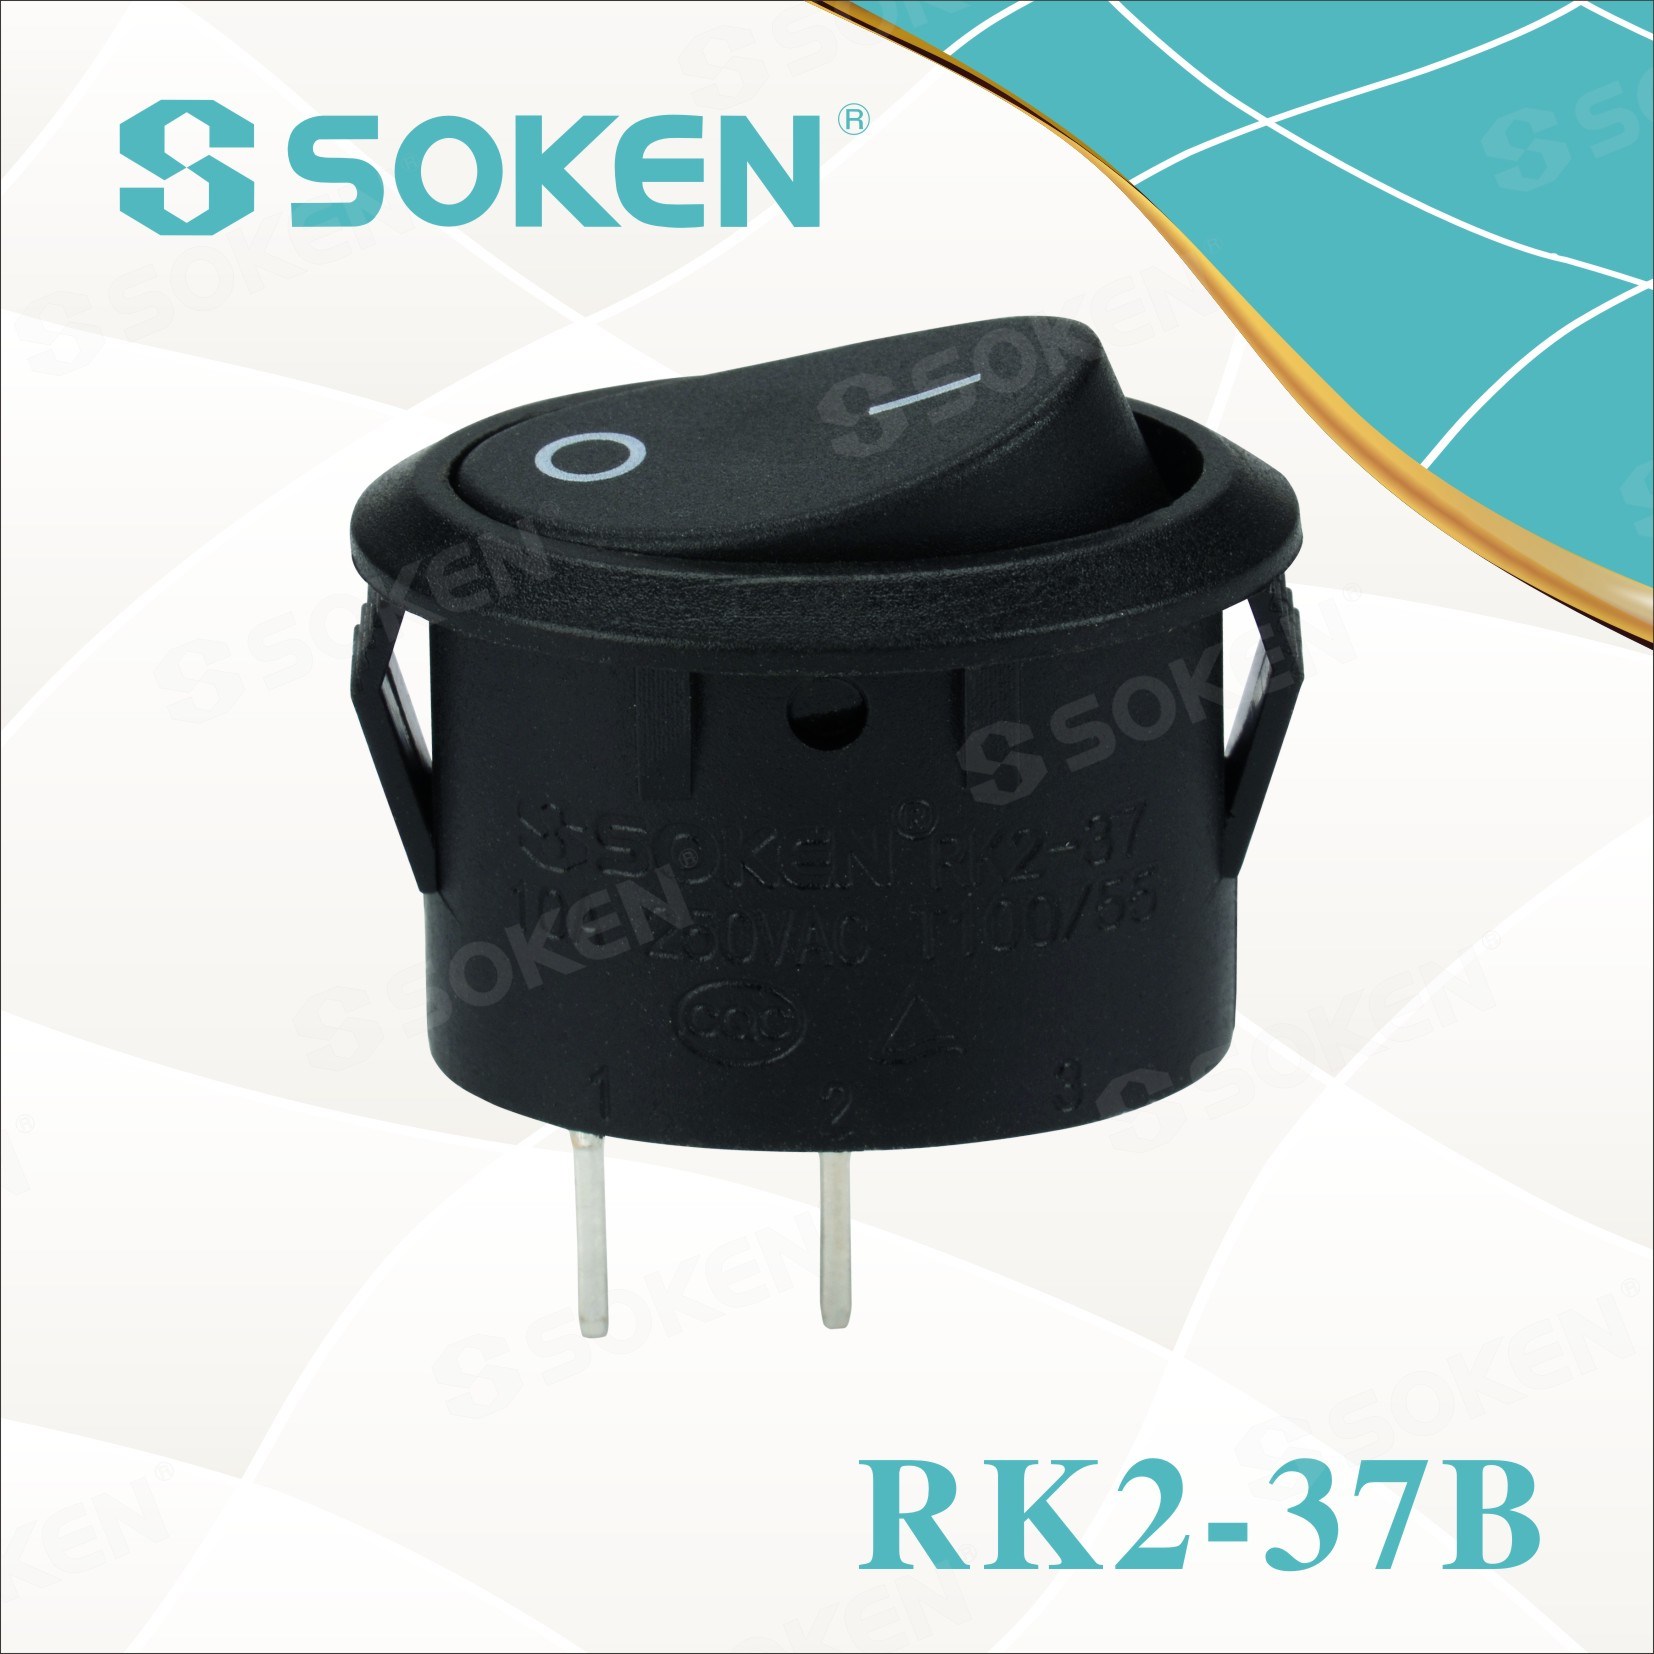 Soken-Rk2-37b-Rocker-Switch2428